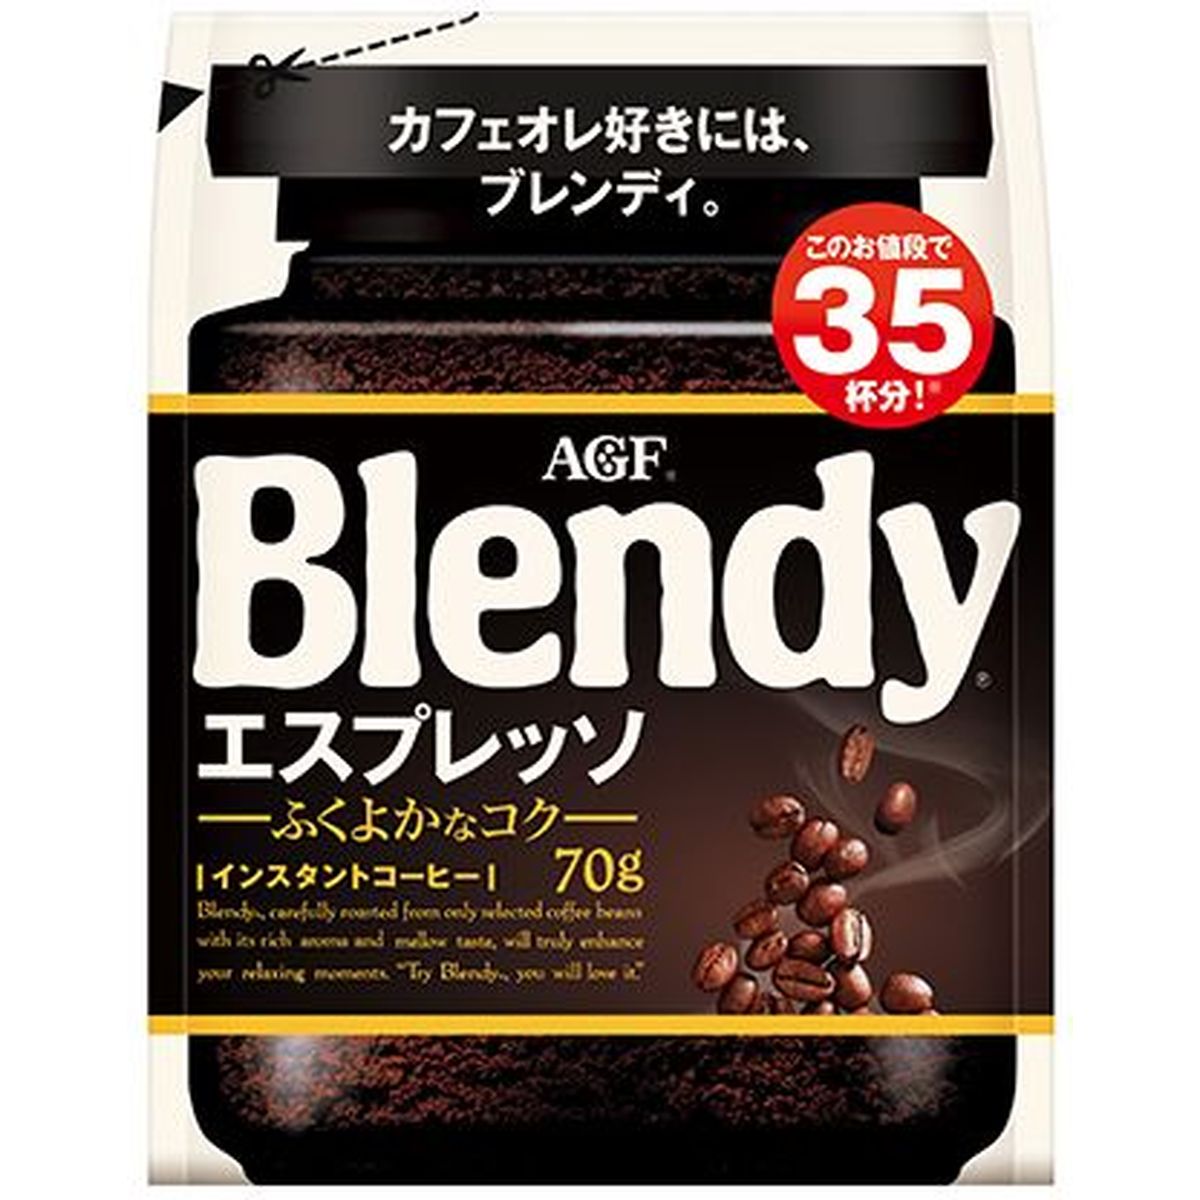 【12個入リ】AGF ブレンディ エスプレッソ インスタントコーヒー 70g